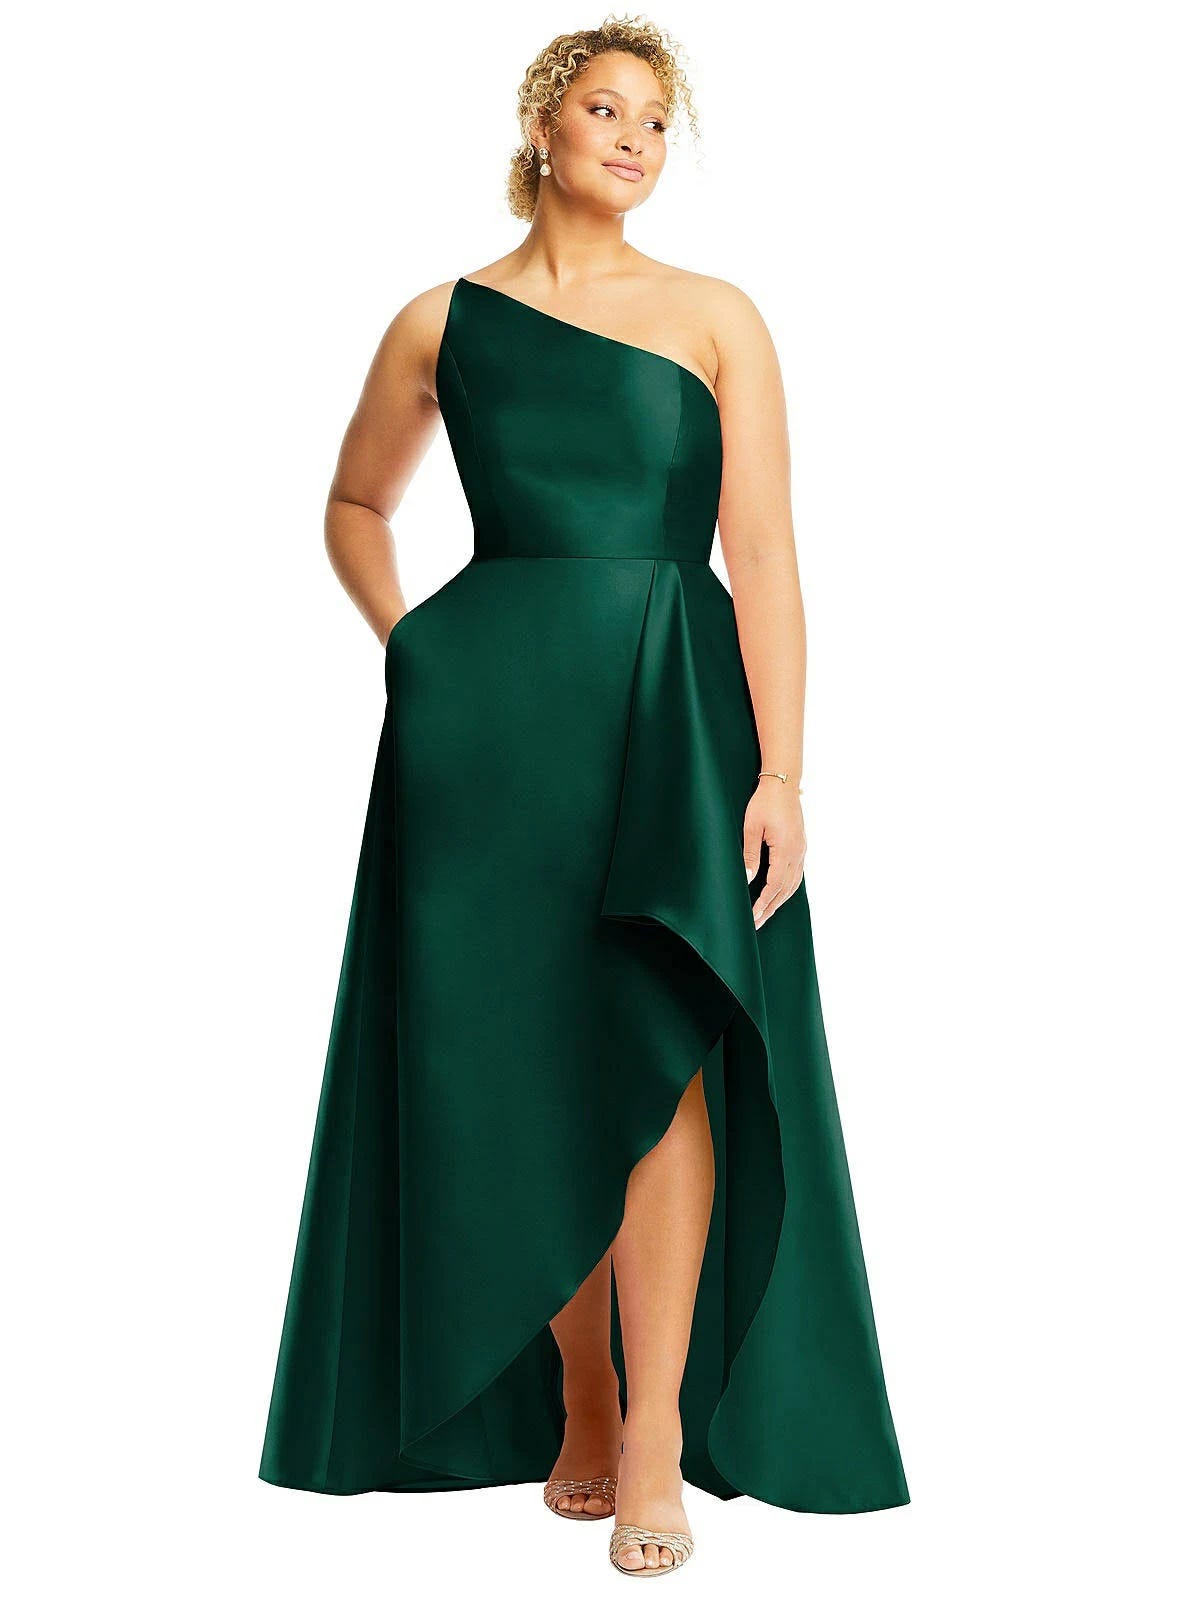 Stunning Hunter Green One-Shoulder Formal Gown | Image